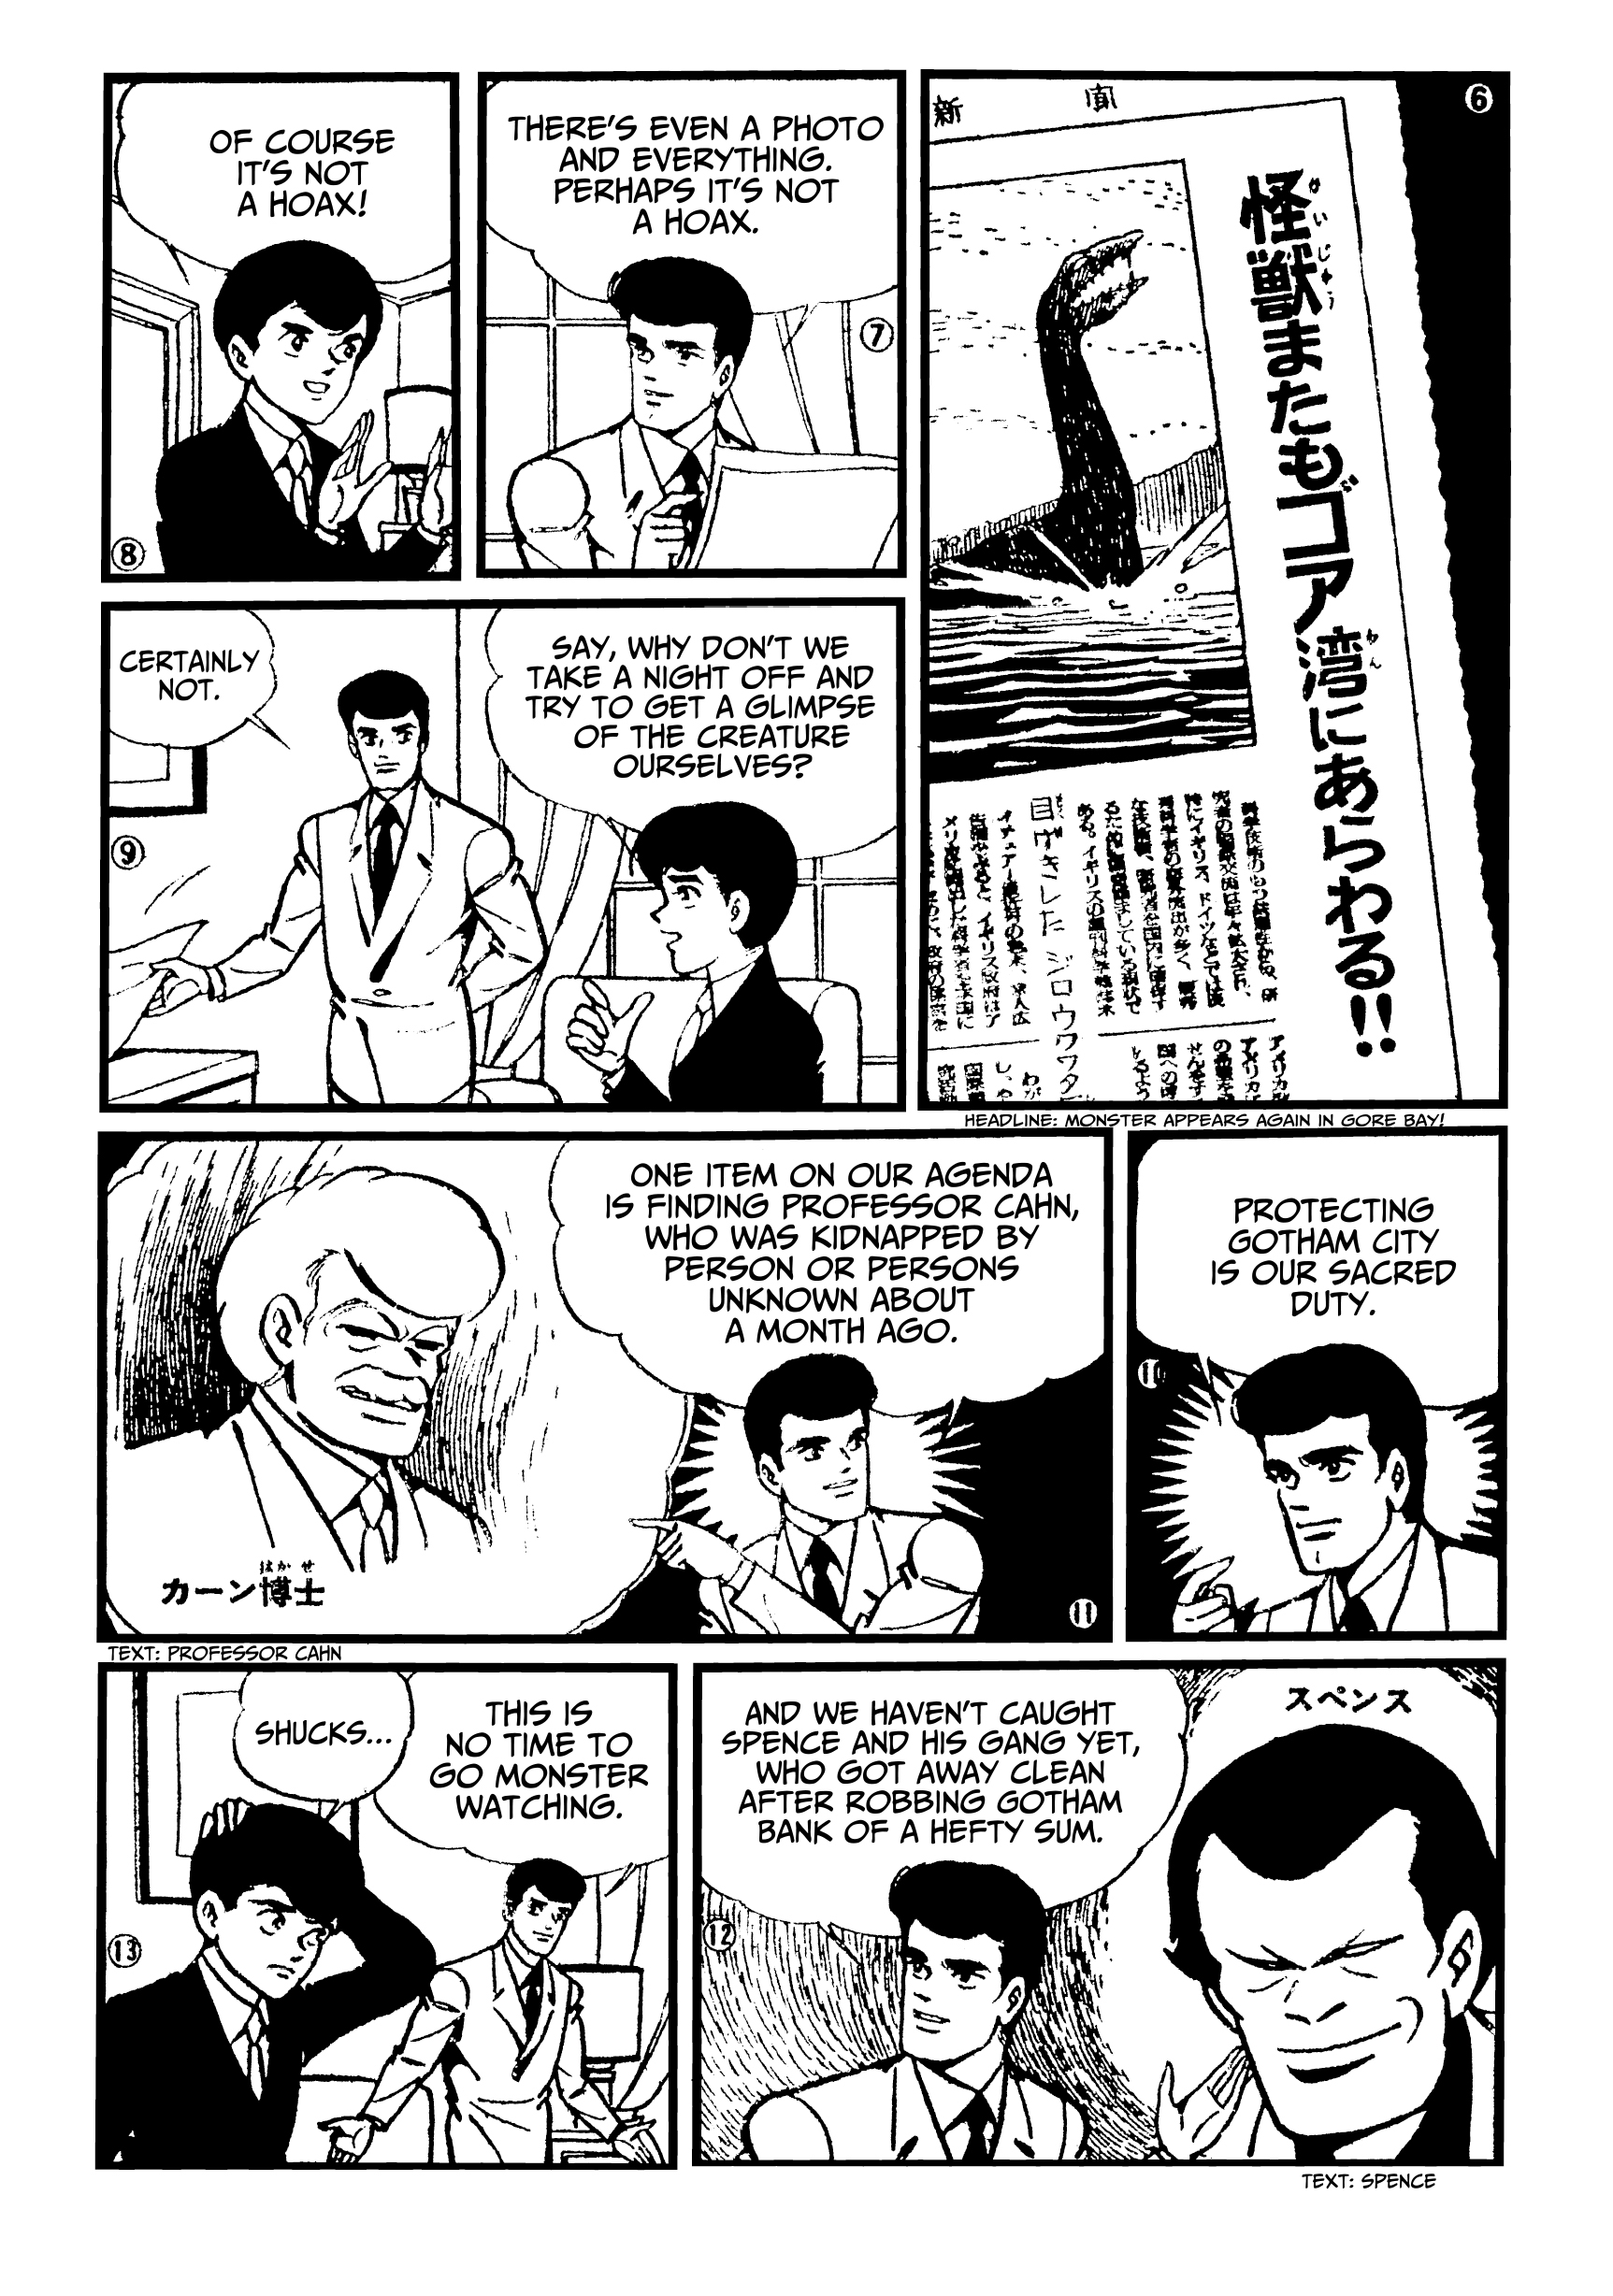 Batman: The Jiro Kuwata Batmanga, Chapter 35, Page 1